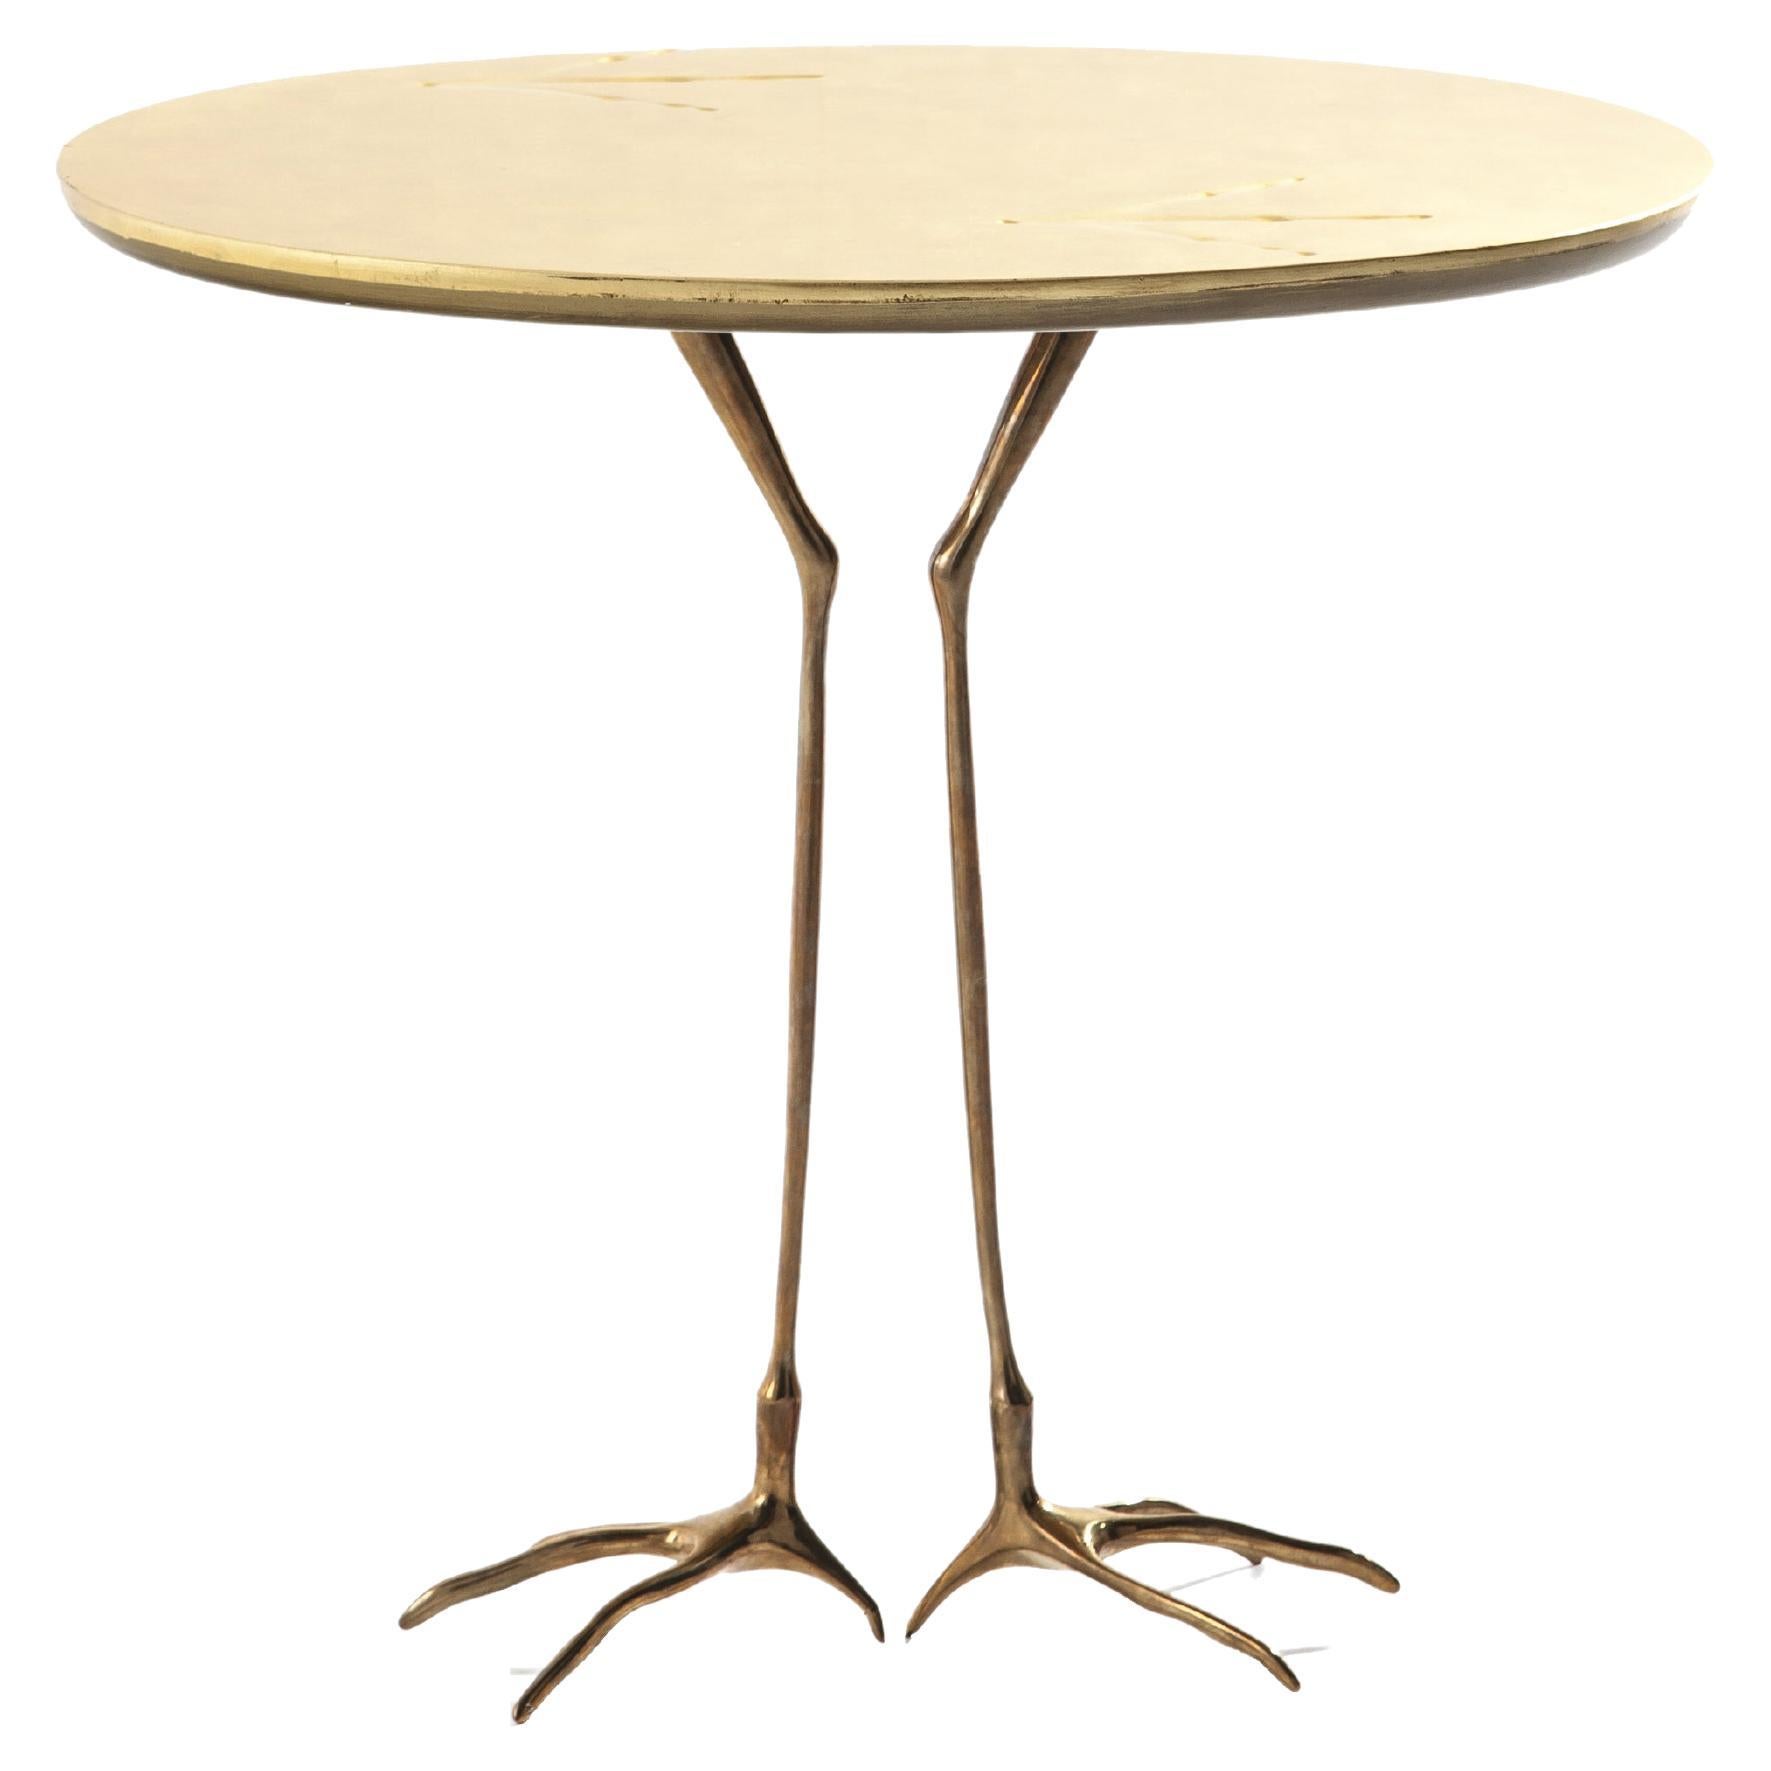 Table sculpturale Meret Oppenheim traccia.
Fabriqué par Cassina en Italie.

En 1971, Dino Gavino lance ce qu'il appelle 